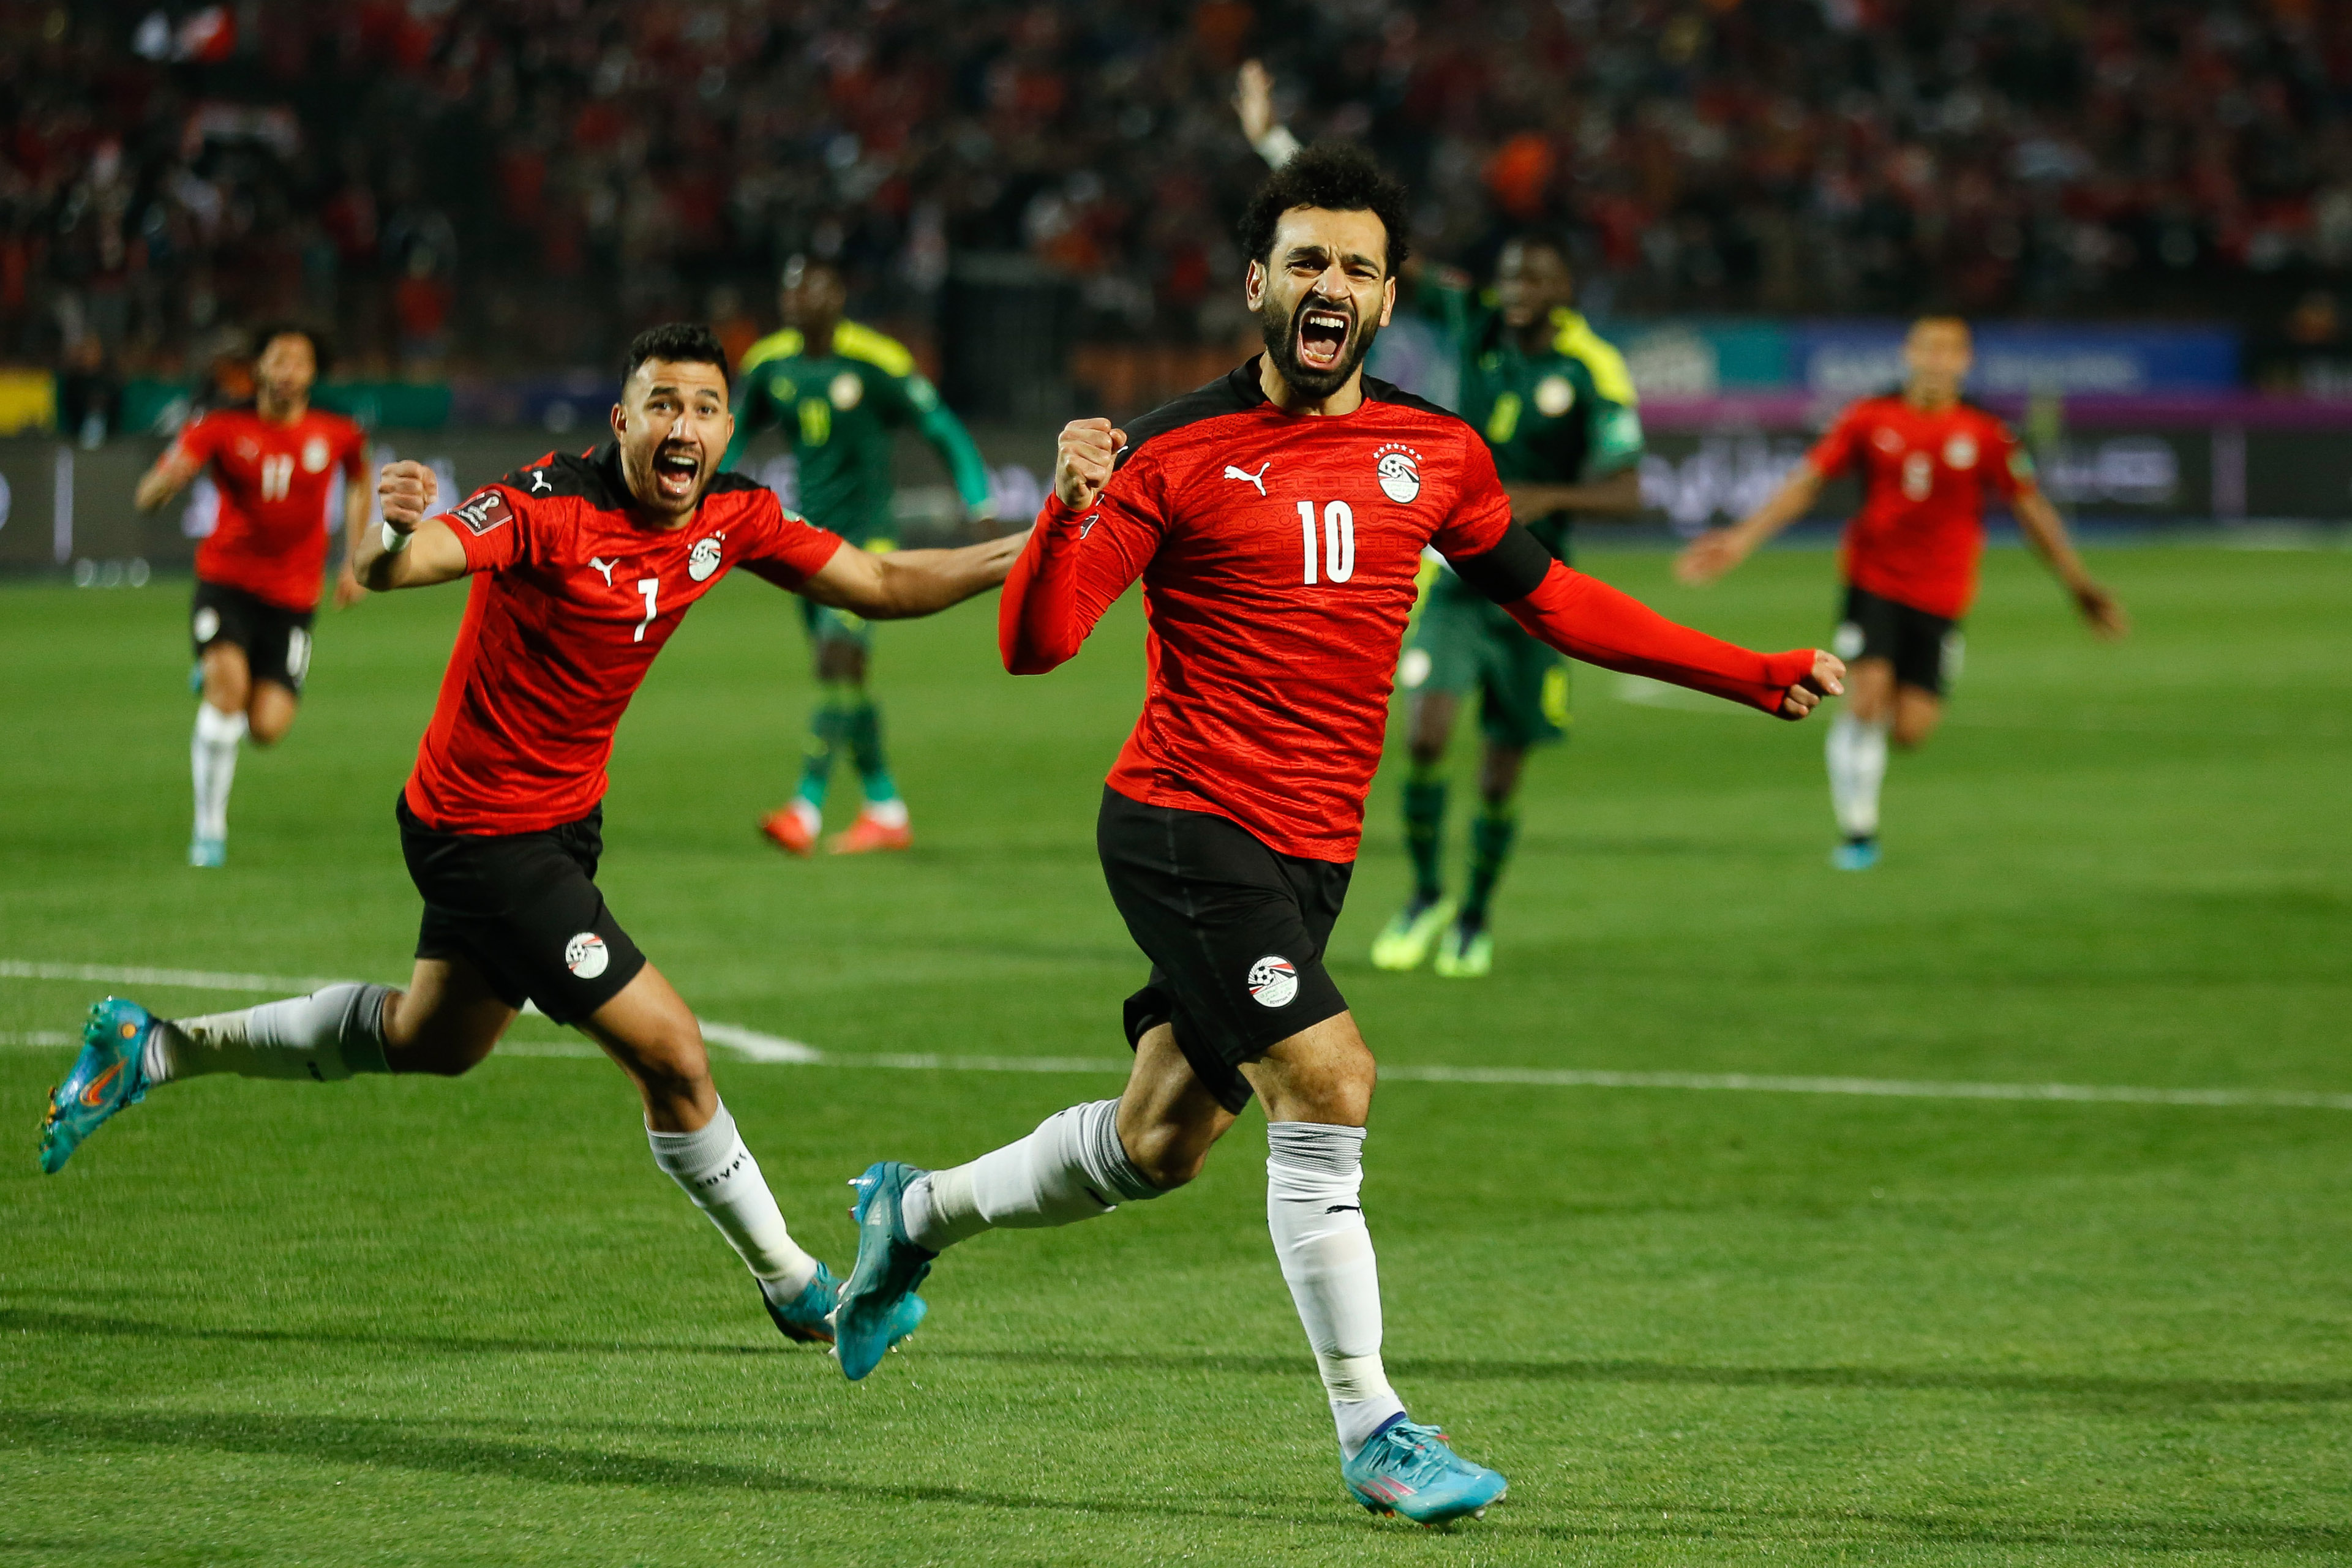 ĐT Ai Cập đánh bại ĐT Senegal, Salah tạm dẫn Mane trên đường đến World Cup